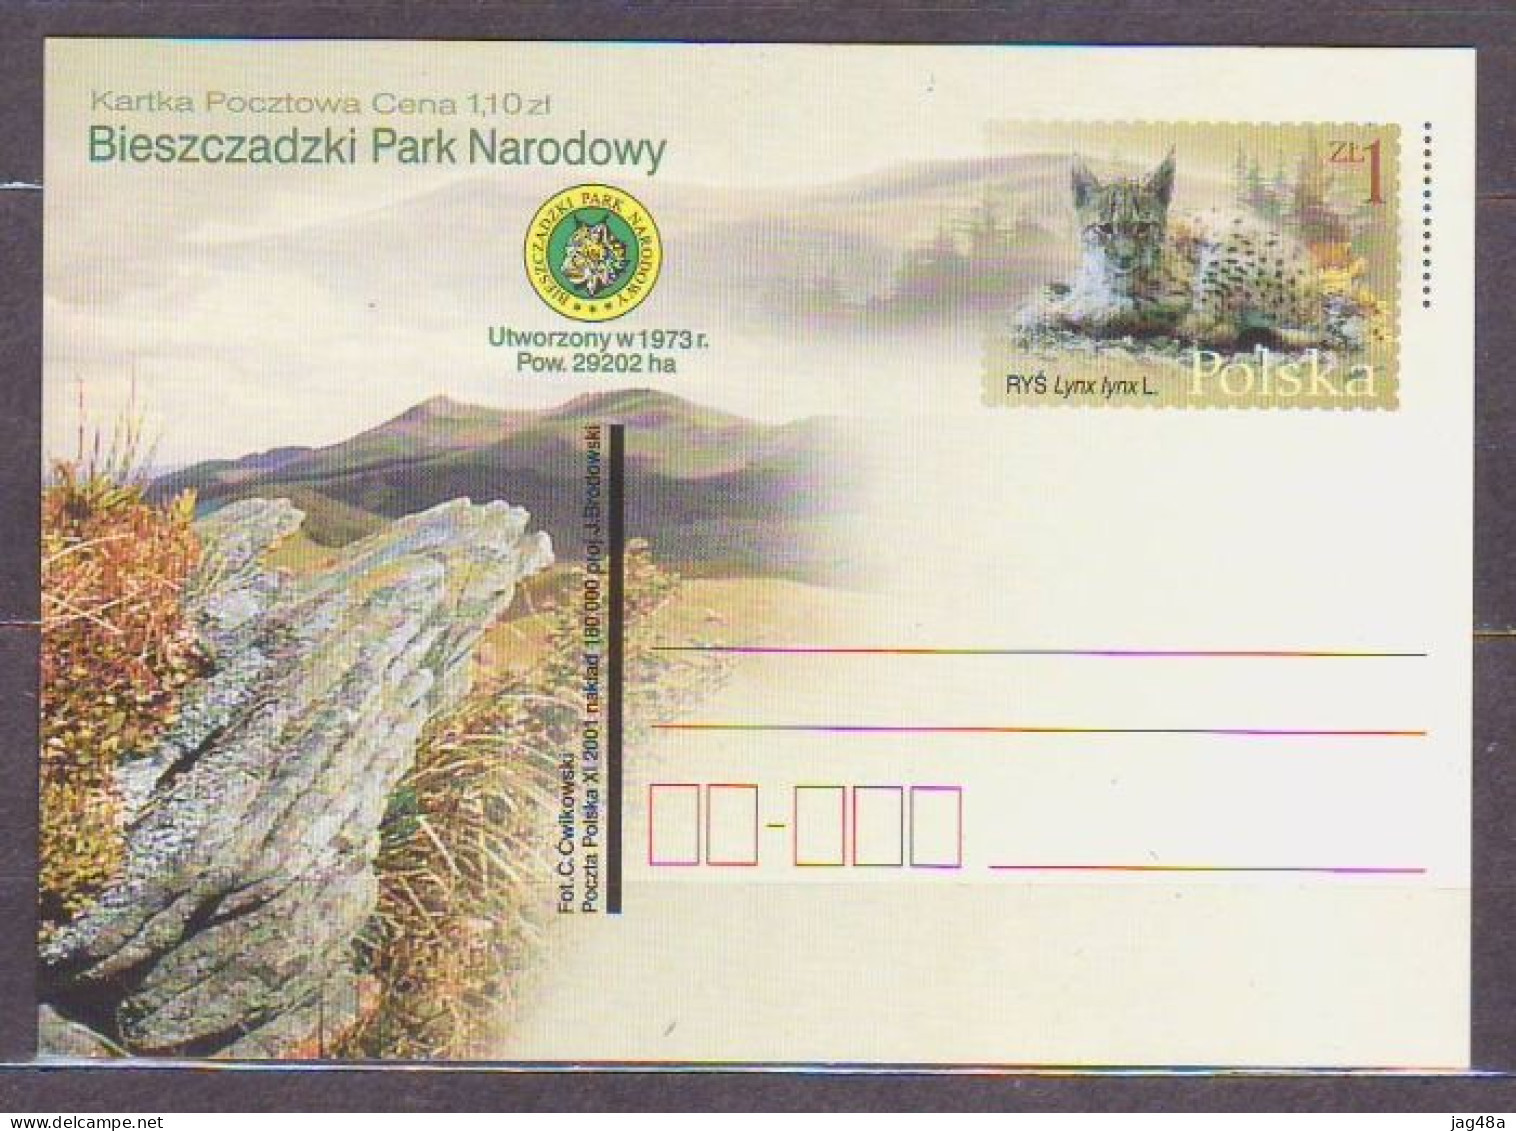 POLAND. 2001/Bieszczadzki Park Narodowy - Eurasian Lynx - PostCard/unused. - Nuevos